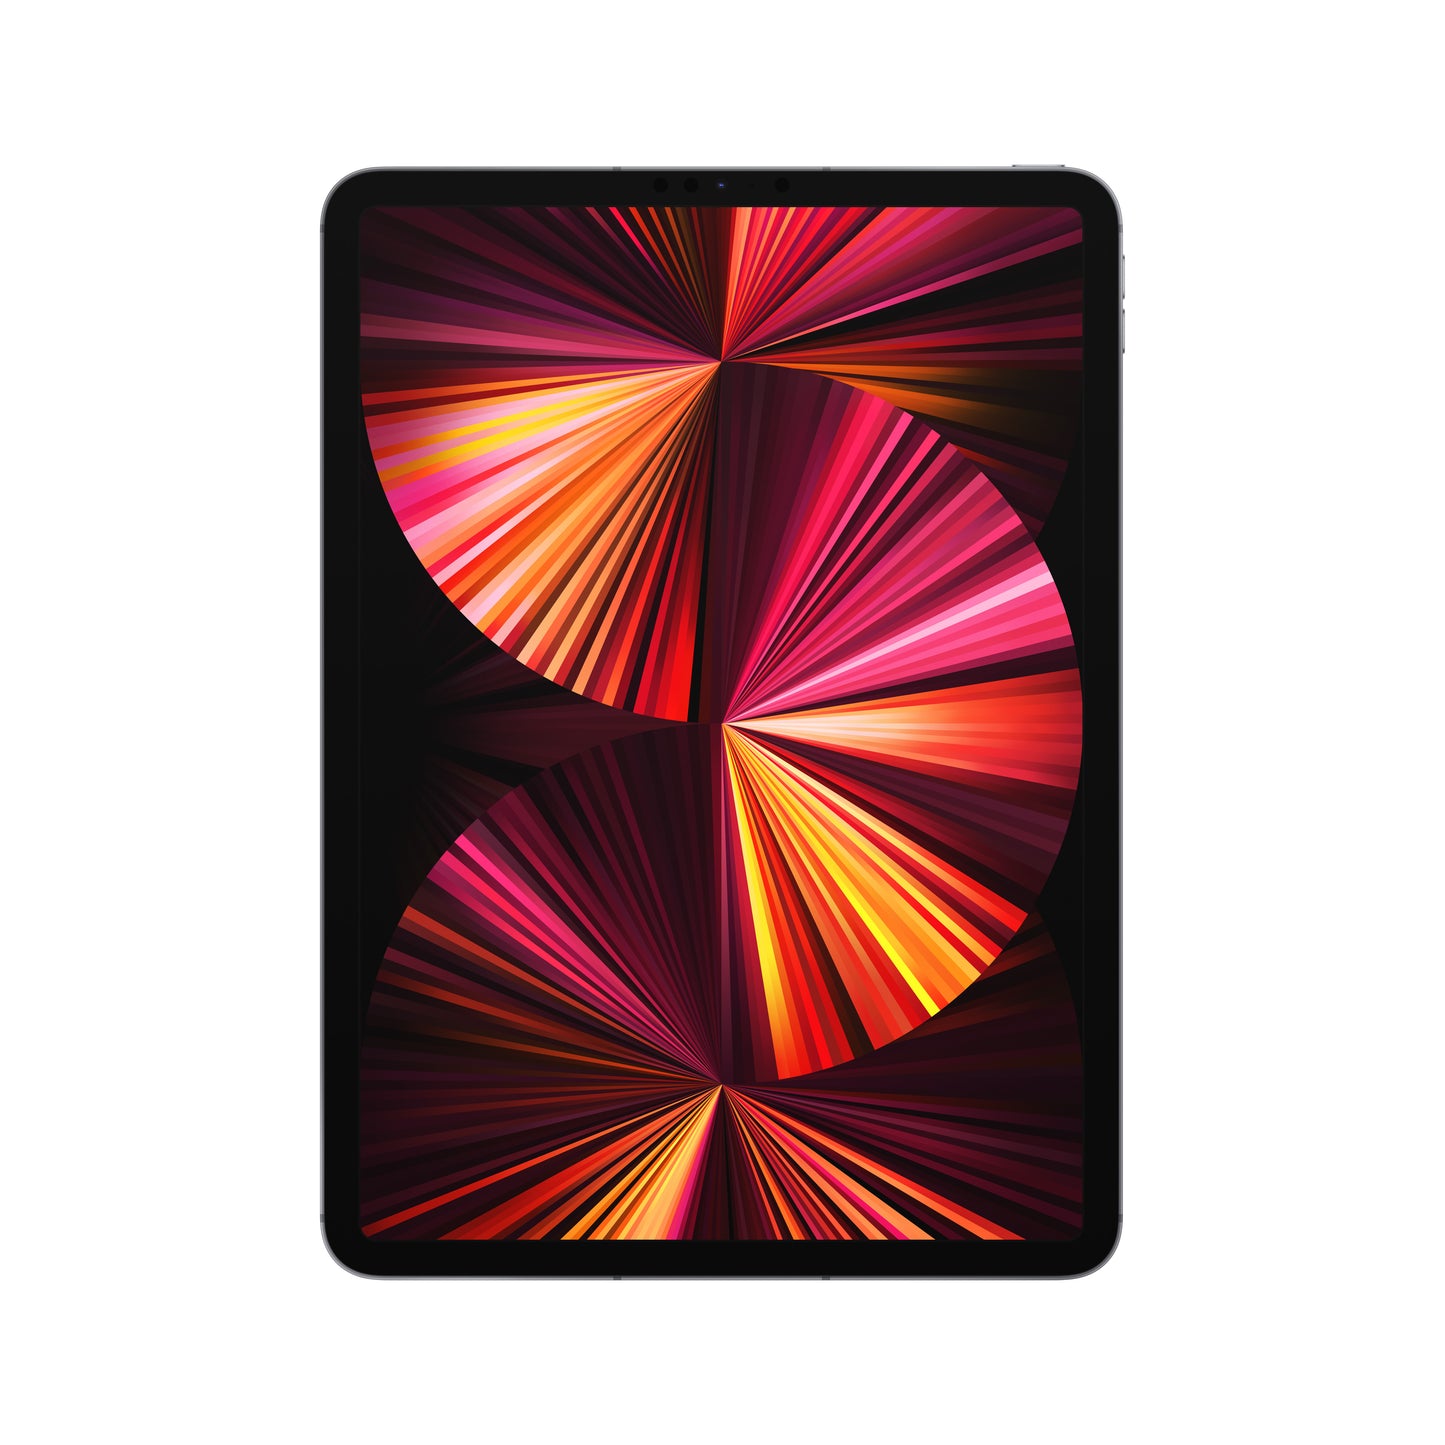 iPad Pro de 11 pulgadas potencia y portabilidad